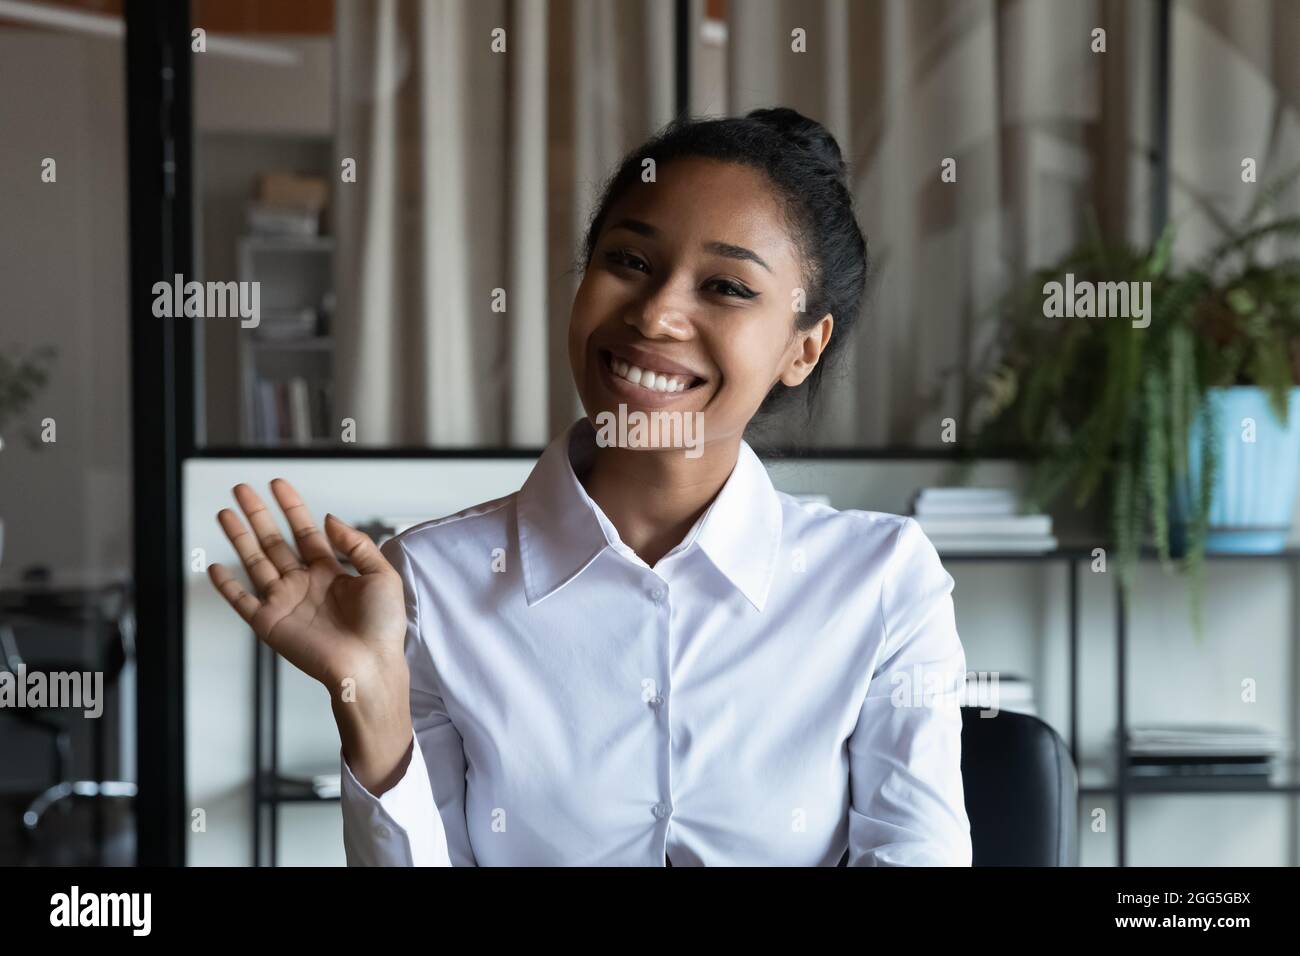 Porträt mit lächelnder afroamerikanischer Geschäftsfrau, die die Hand winkt Stockfoto